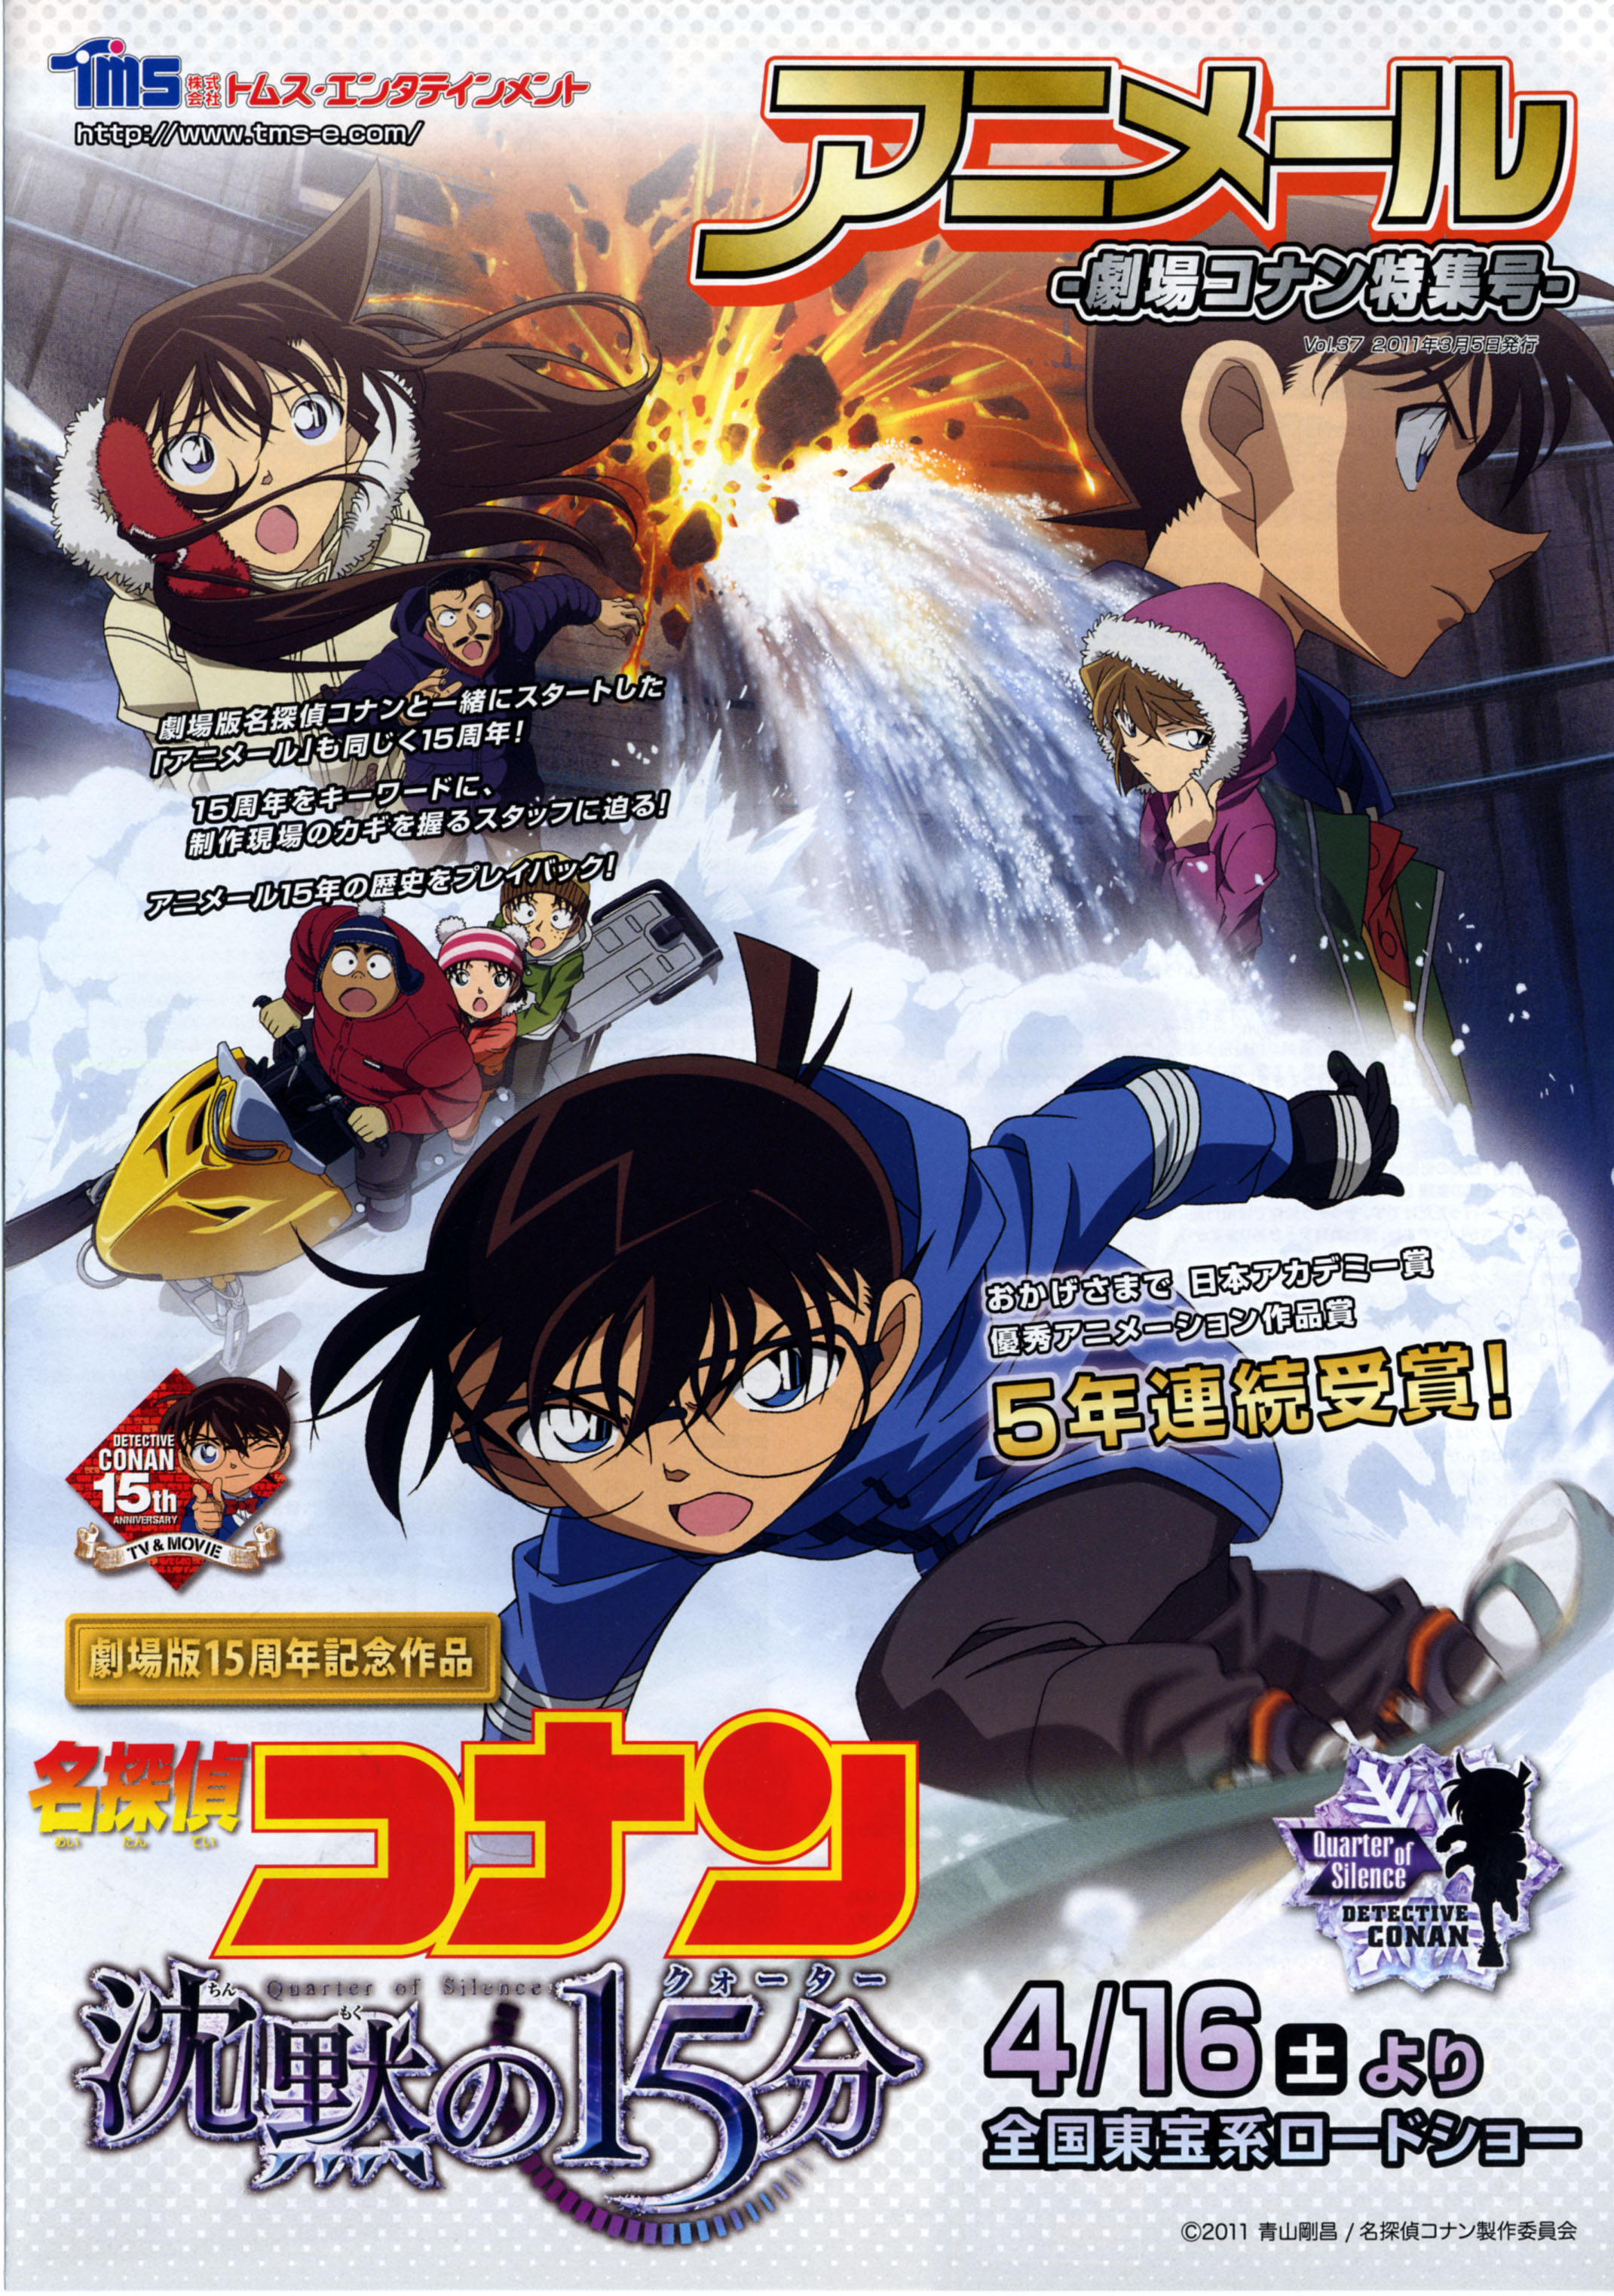 Detective Conan: Quarter Of Silence Main Poster